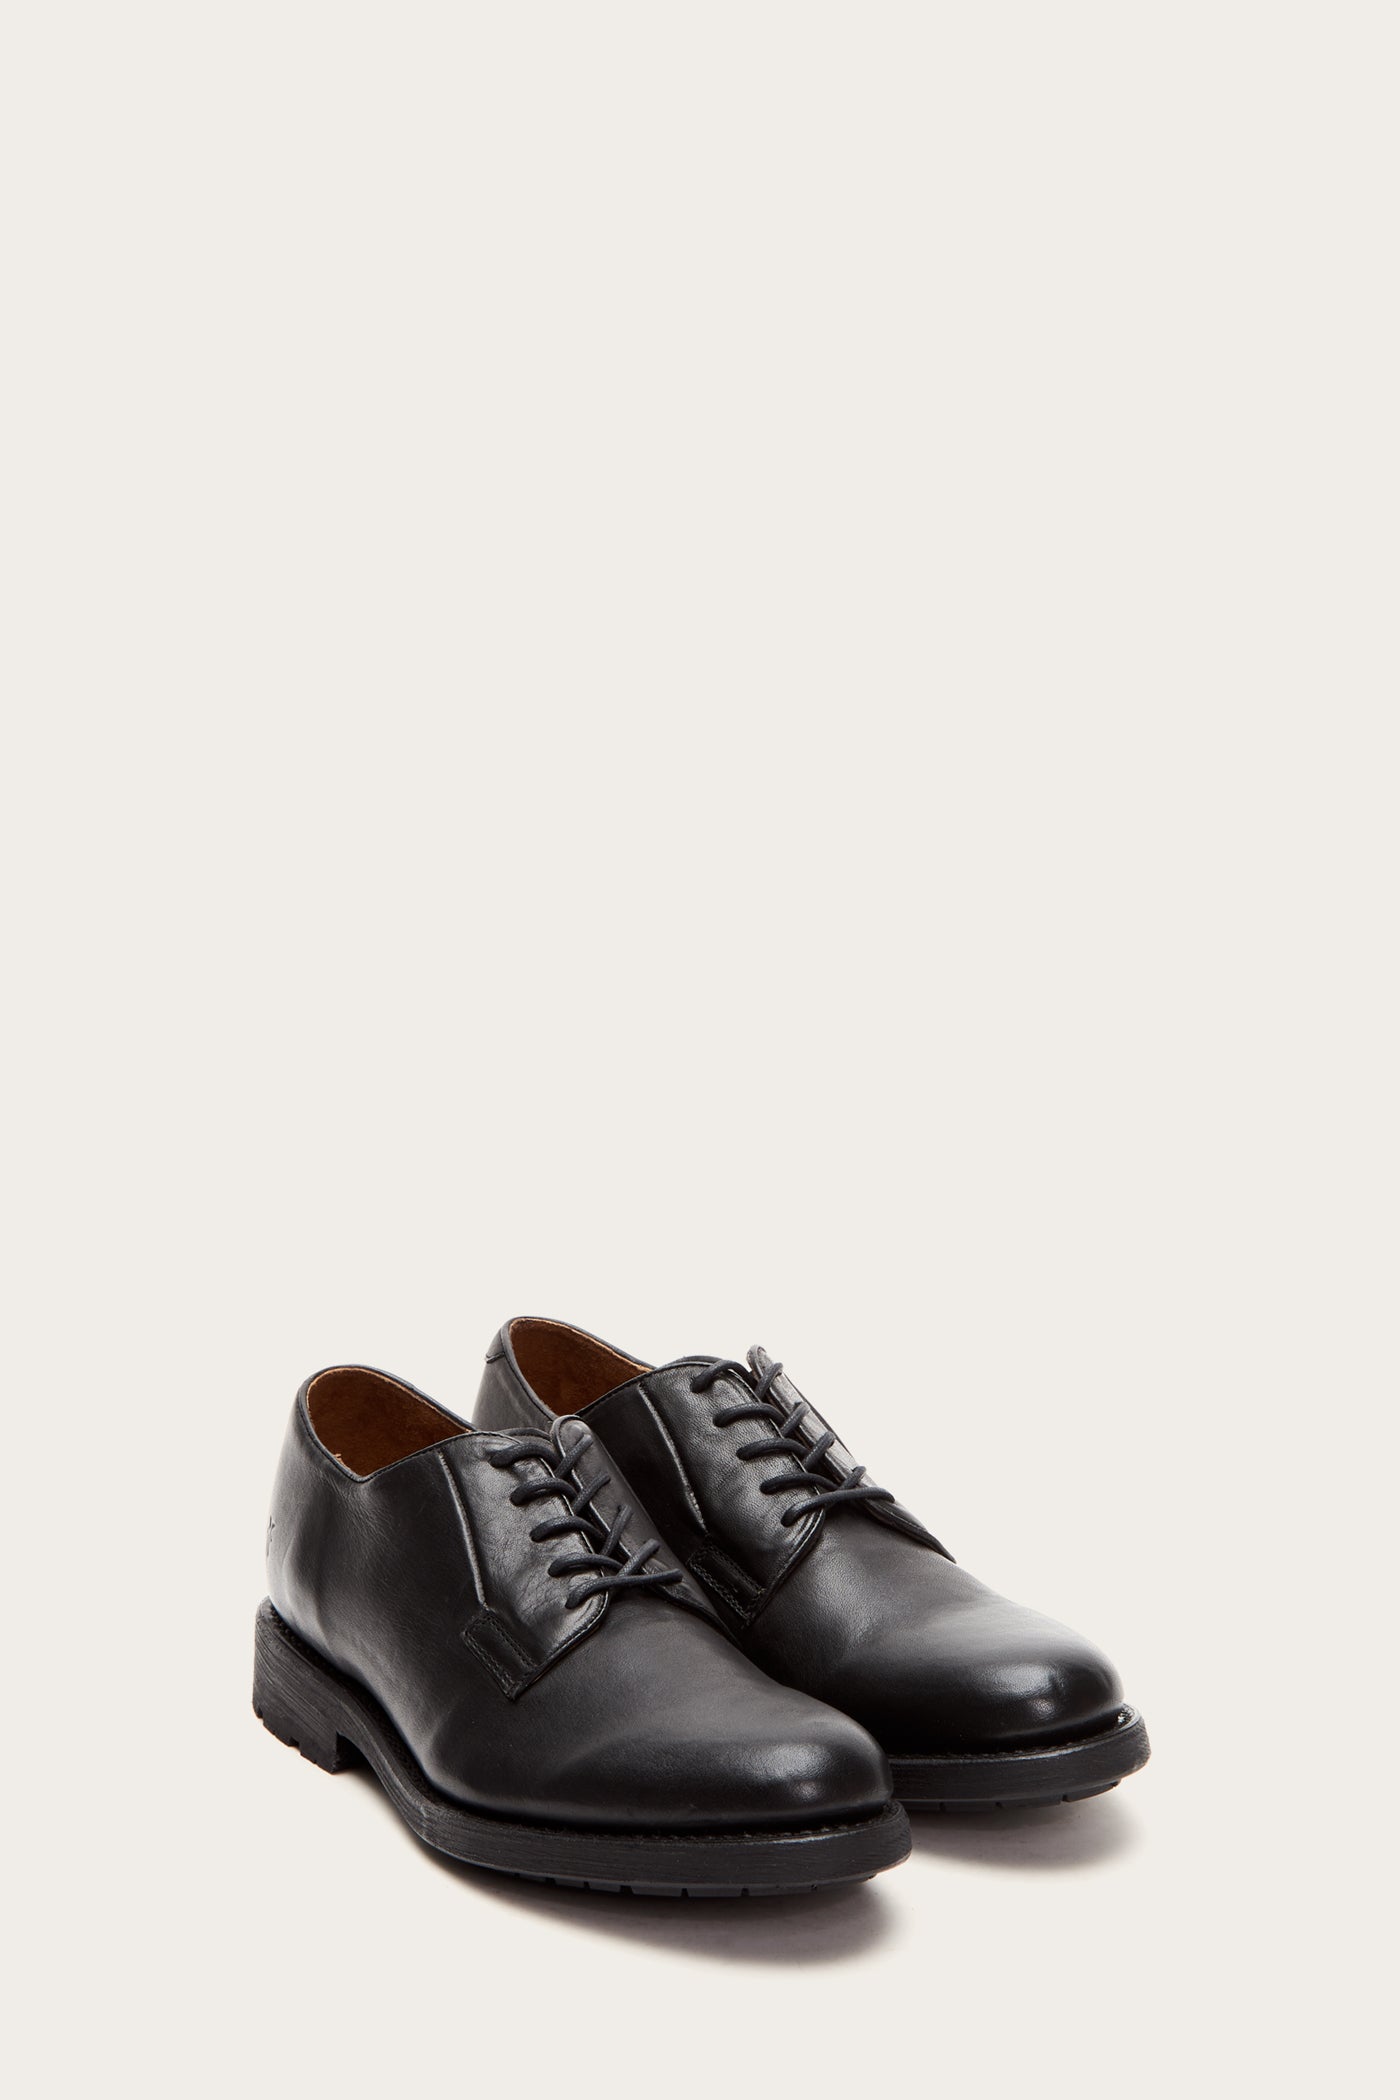 frye men's oxford shoes